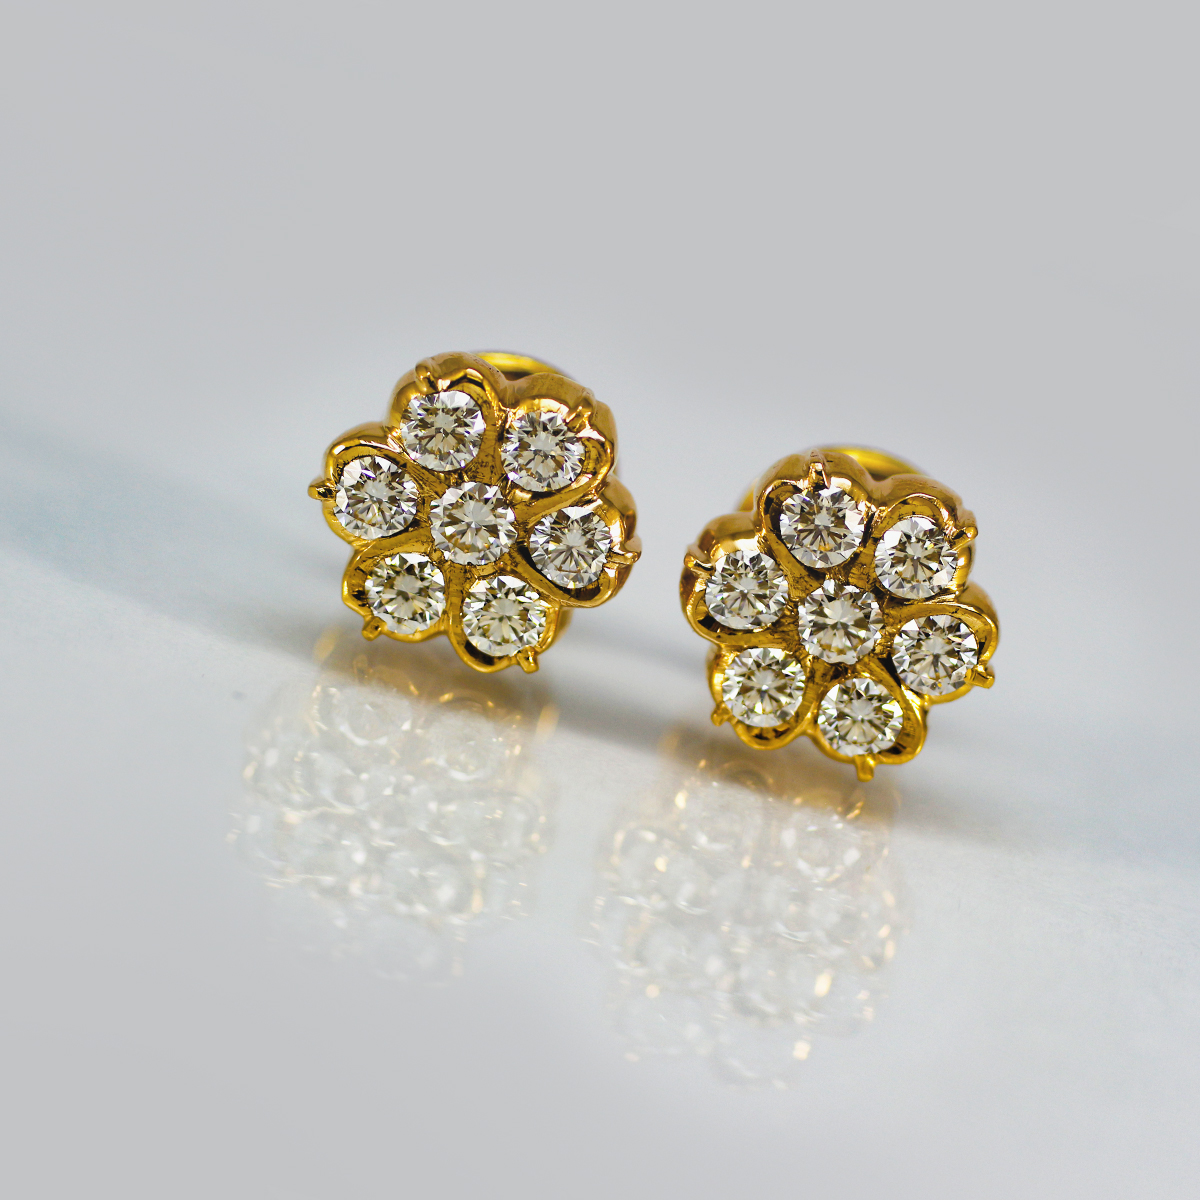 22kt Rose Gold Traditional Nakshatra S Design Studs - N Gopaldaas Jewellers